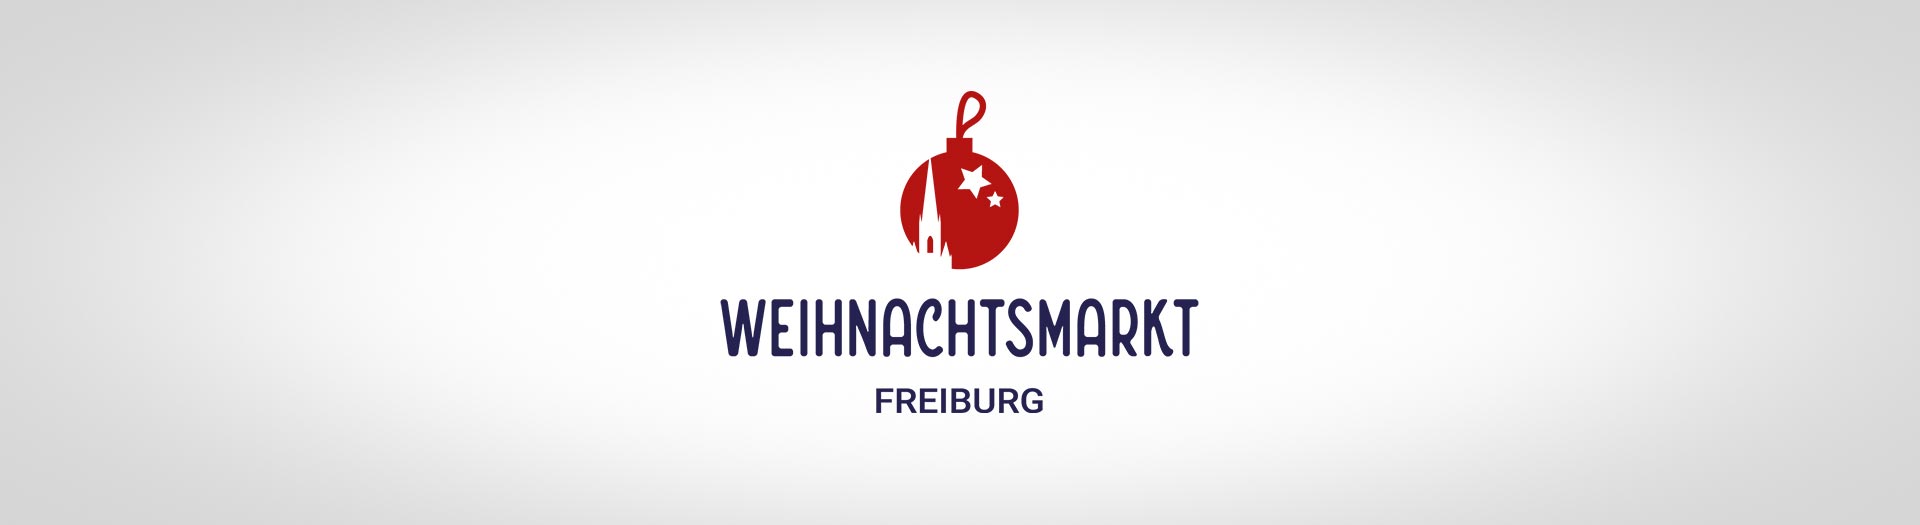 Markenrelaunch für den Weihnachtsmarkt Freiburg - tp werbeagentur